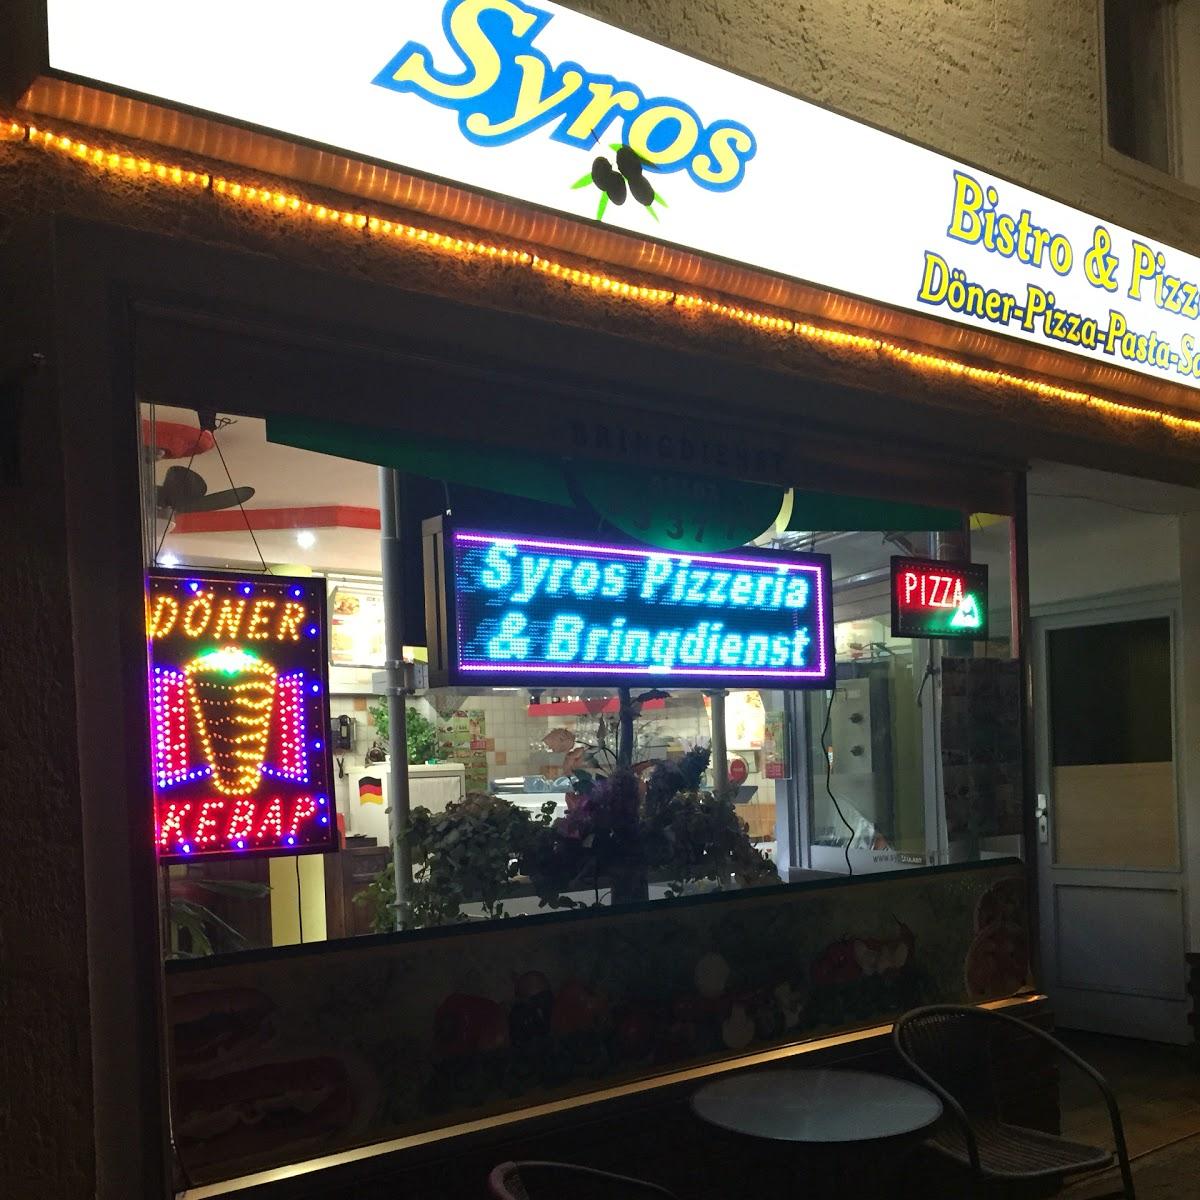 Restaurant "Syros Pizzeria" in Laatzen